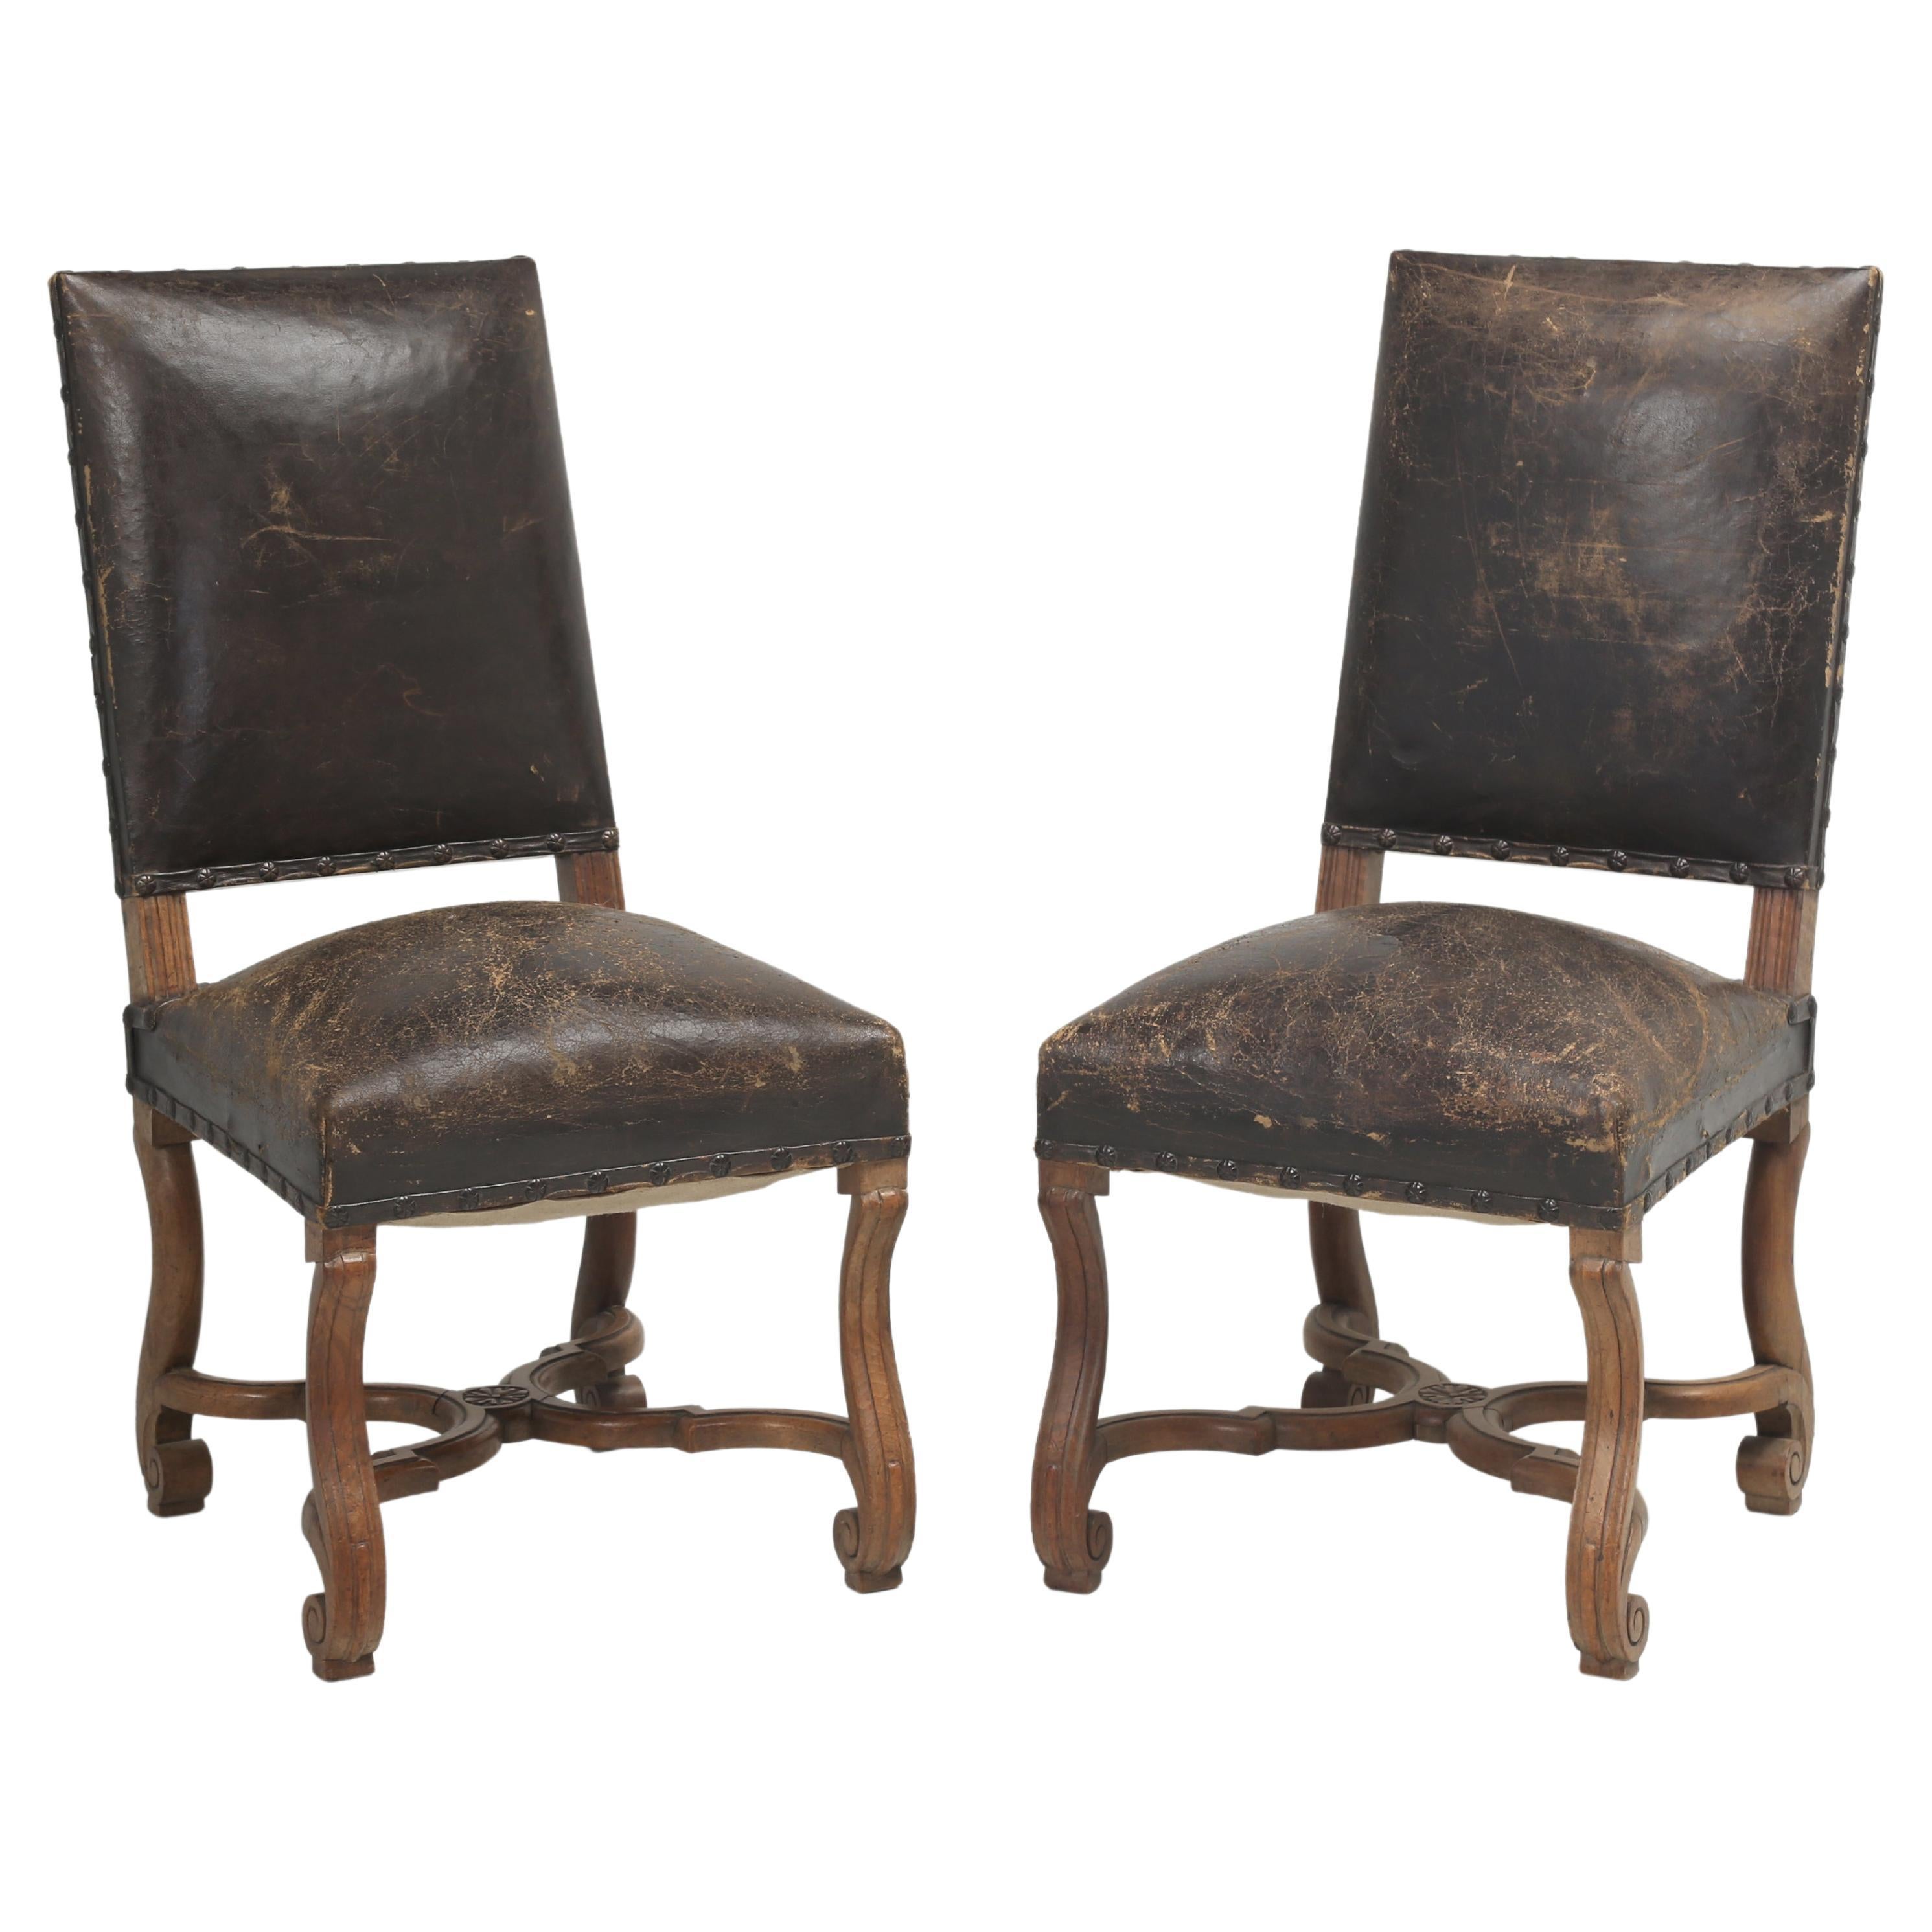 Paar antike Beistellstühle aus altem Leder, wahrscheinlich italienischer Stil, frühe 1900er Jahre, unrestauriert